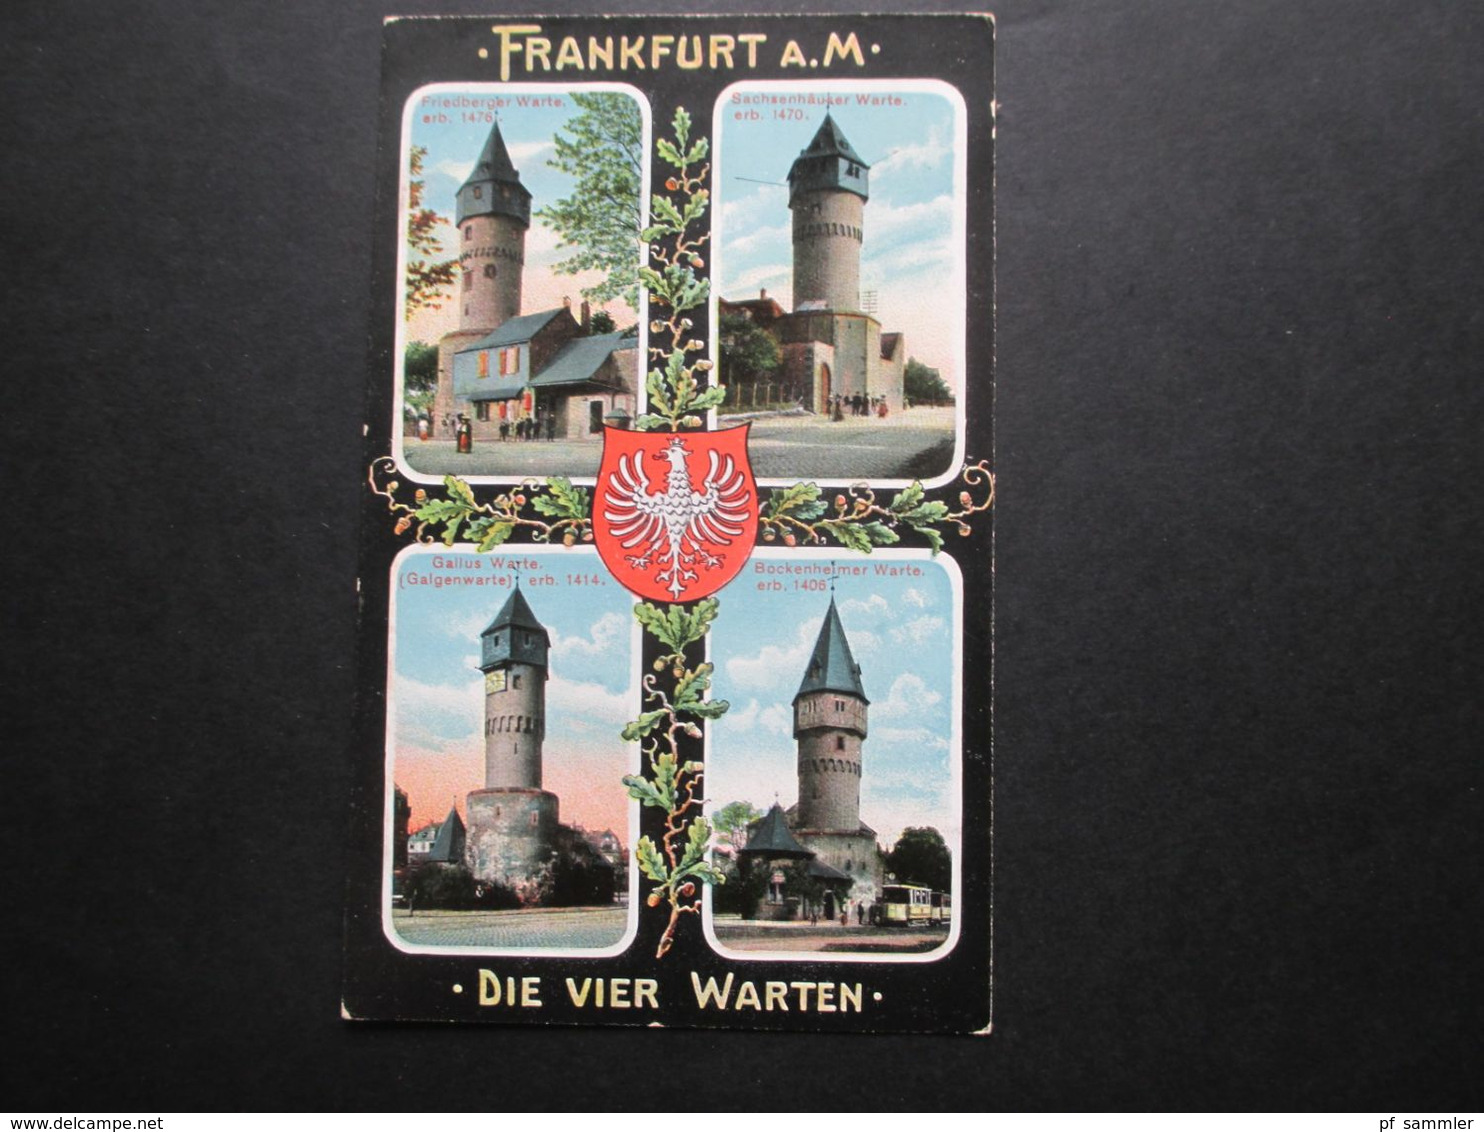 AK Deutsches Reich um 1910 Frankfurt am Main verschiedene Ansichten! 13 Ansichtskarten ungebraucht!